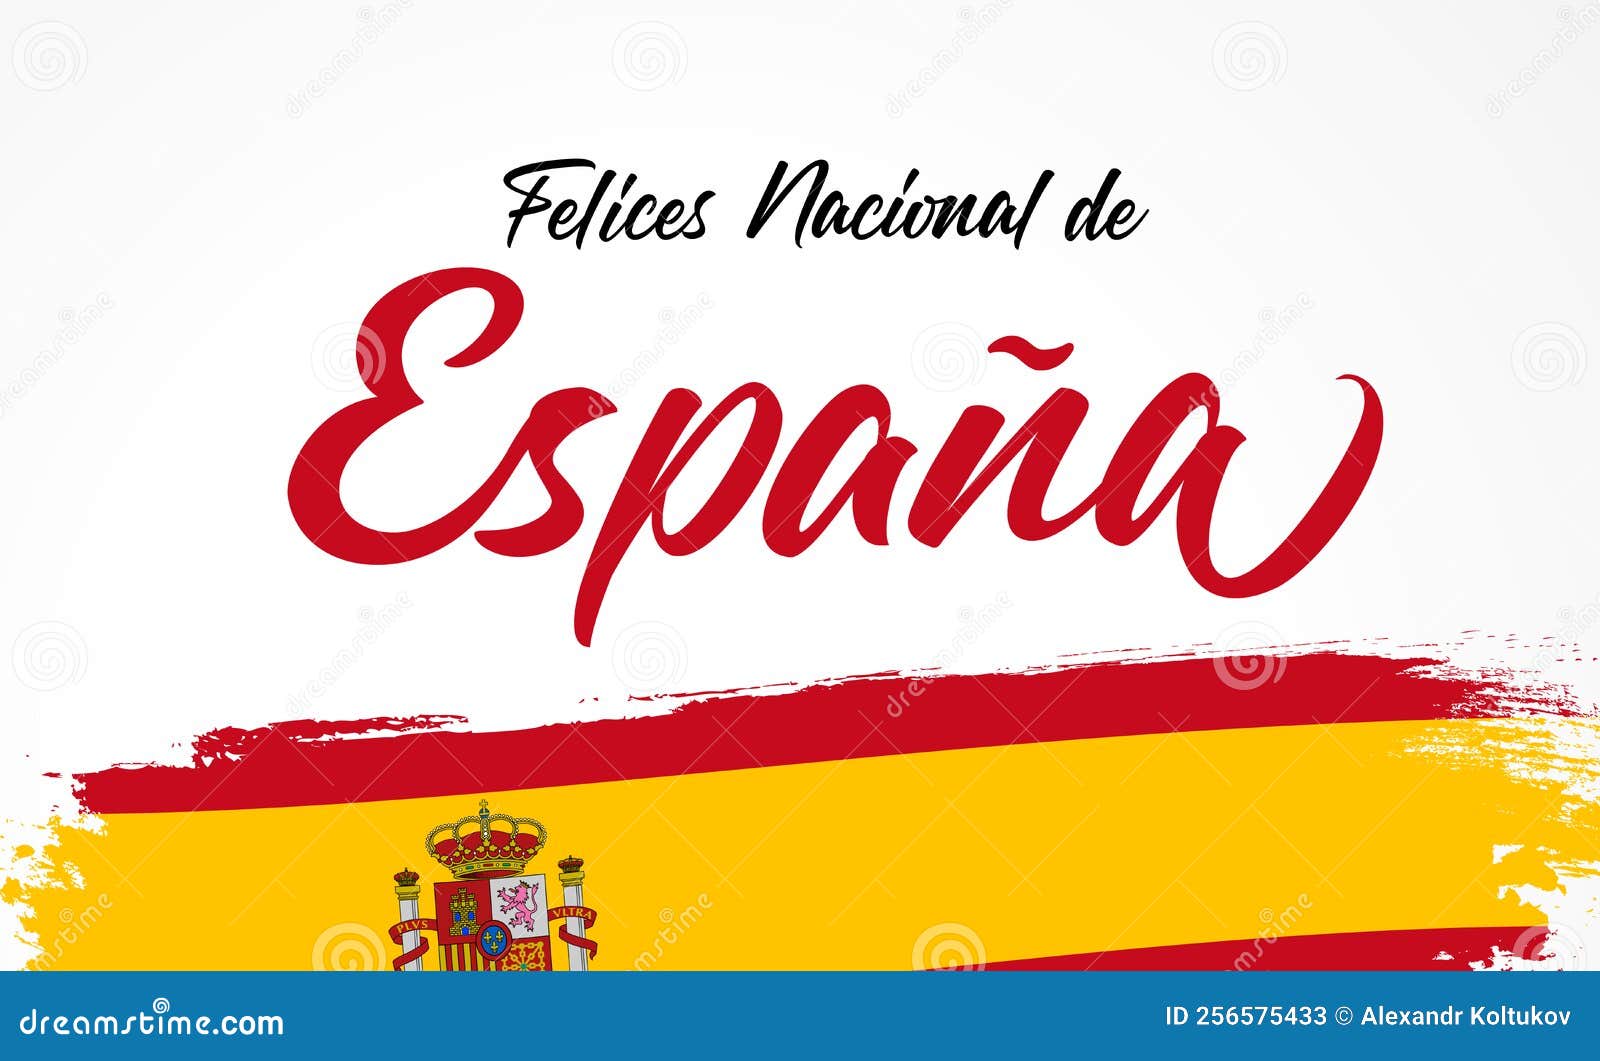 fiesta nacional de espana calligraphy and flag